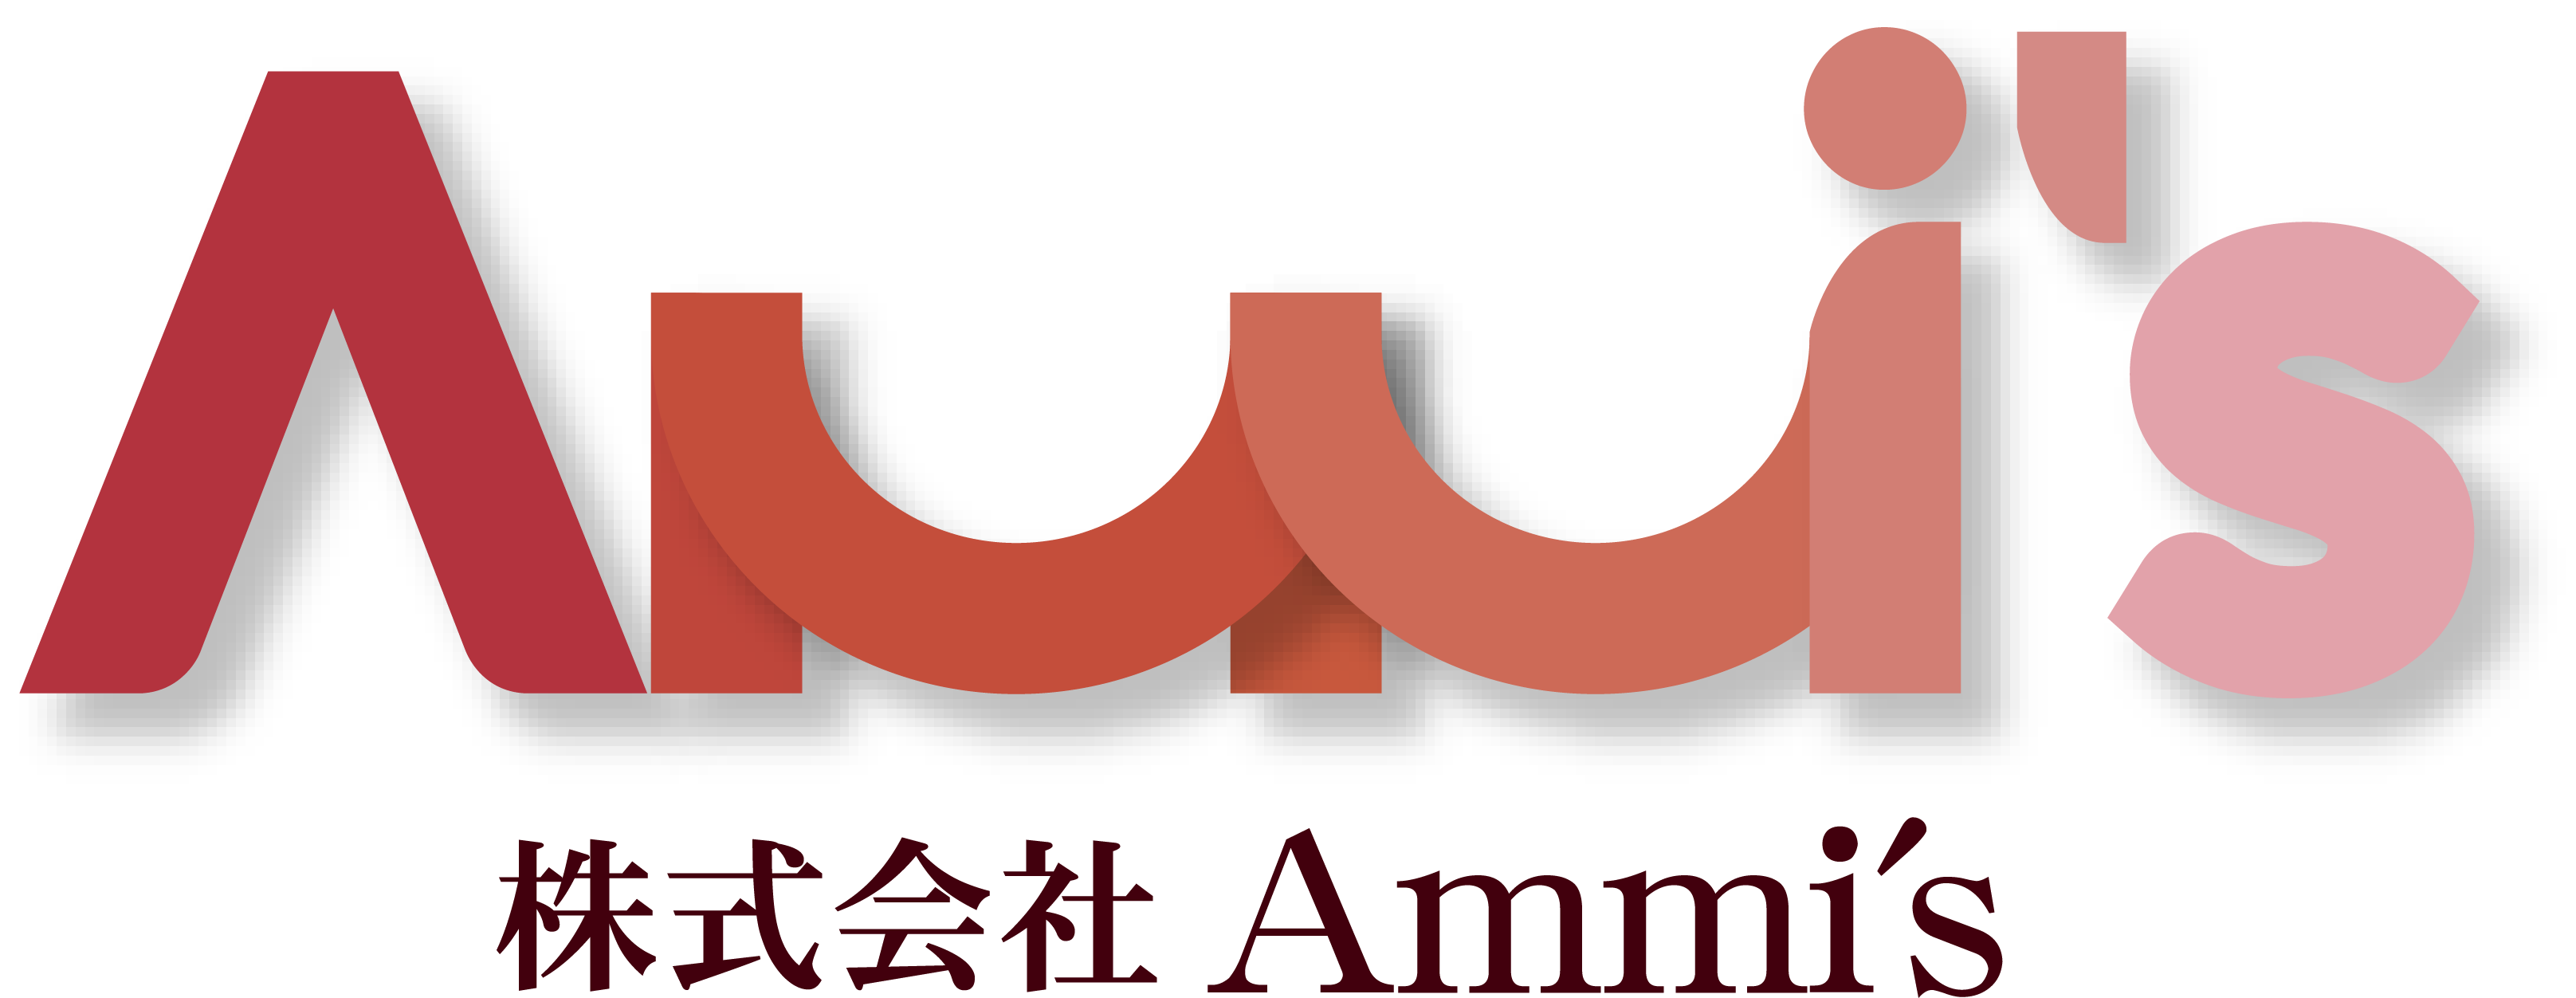 株式会社Ammi′sのロゴ